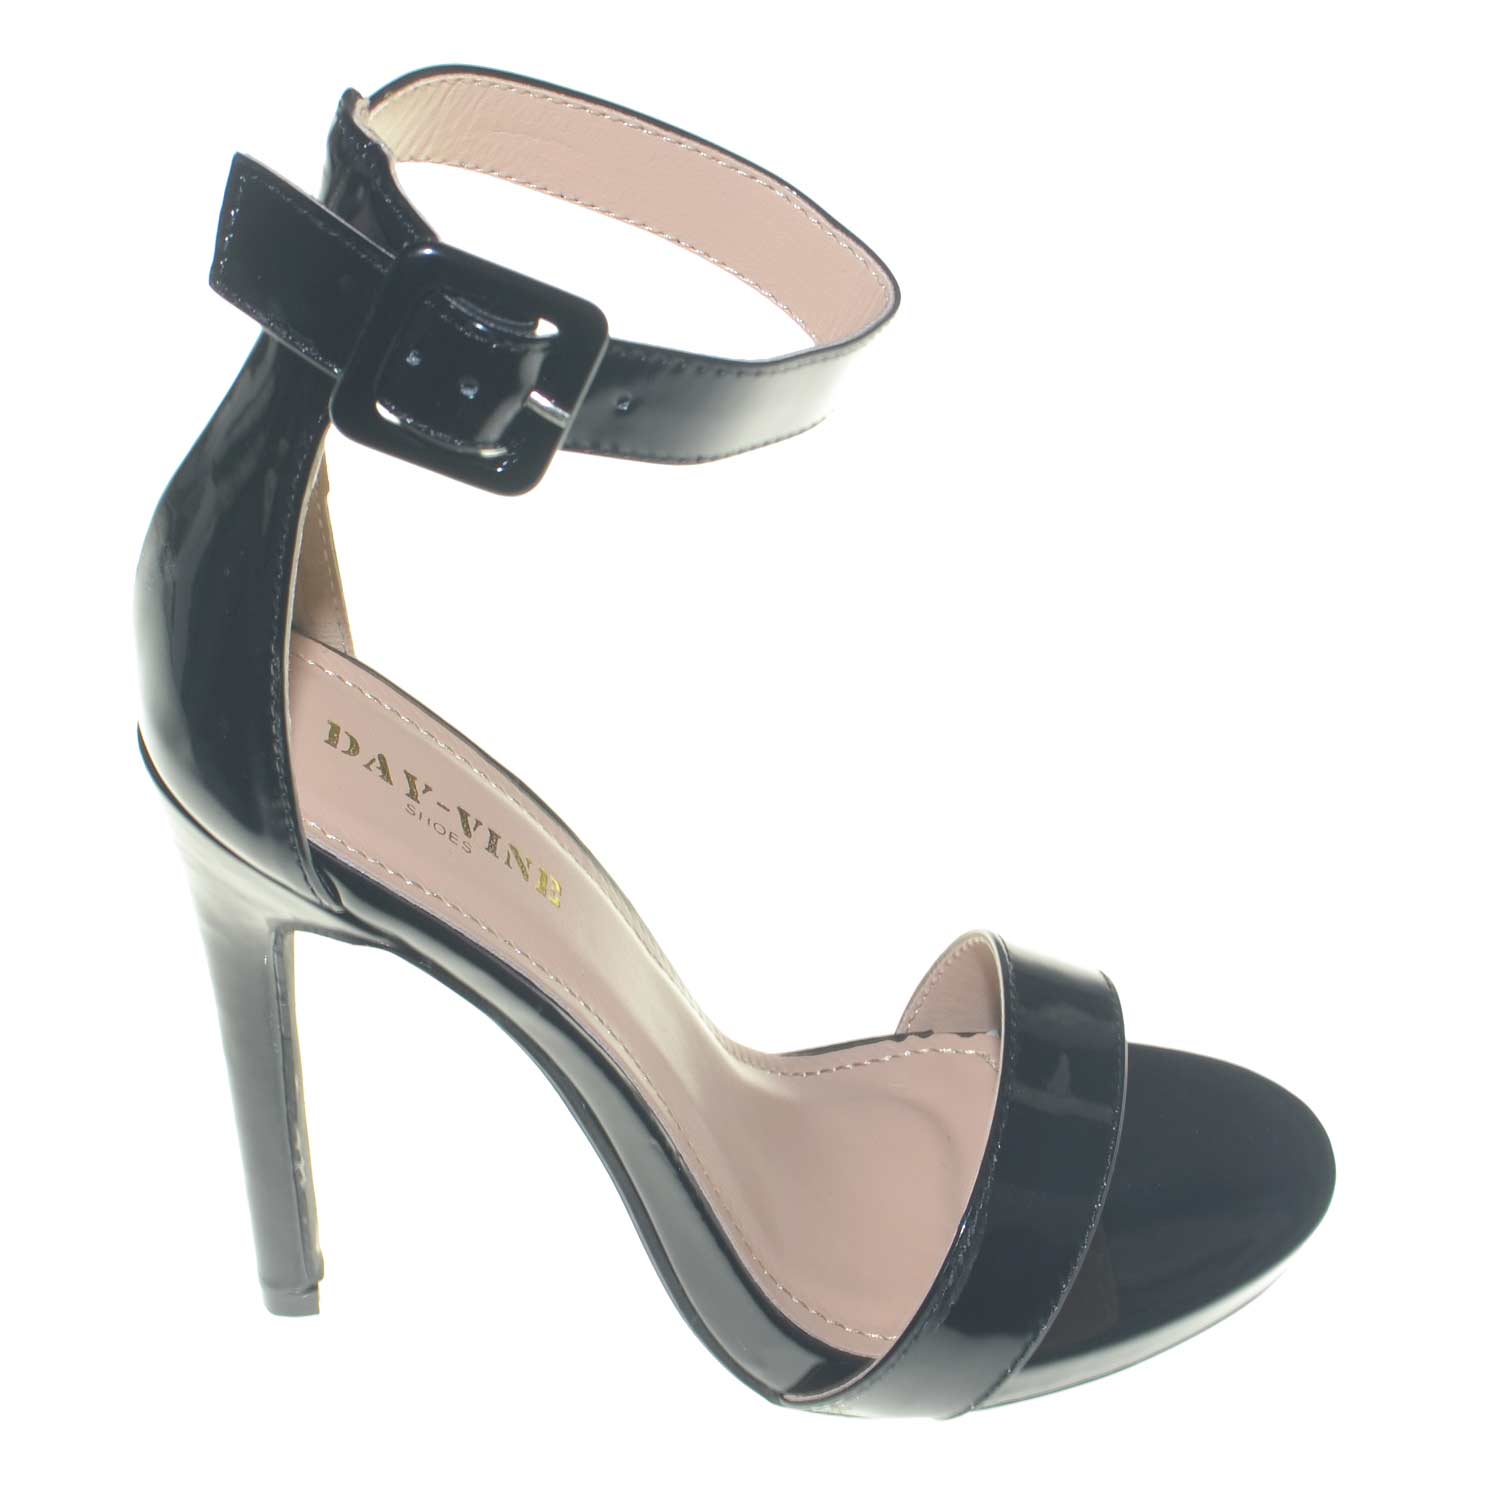 Sandalo donna lucido nero tacco a spillo linea basic tacco a spillo plateau  e cinturino alla caviglia donna sandali tacco Malu Shoes | MaluShoes